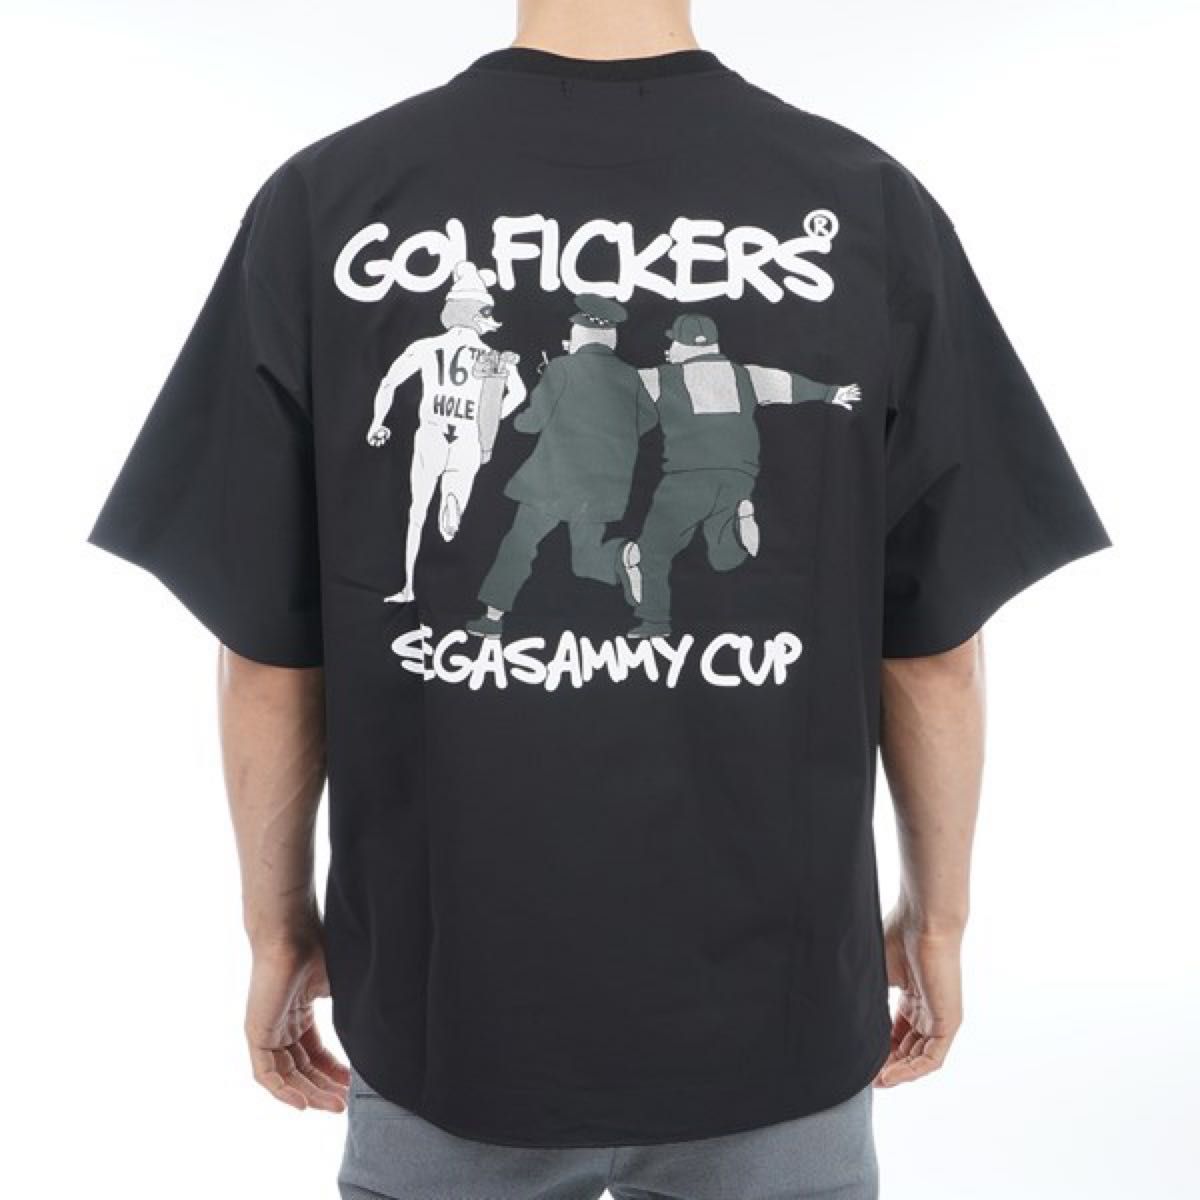 Golfickers Tシャツ 新品-